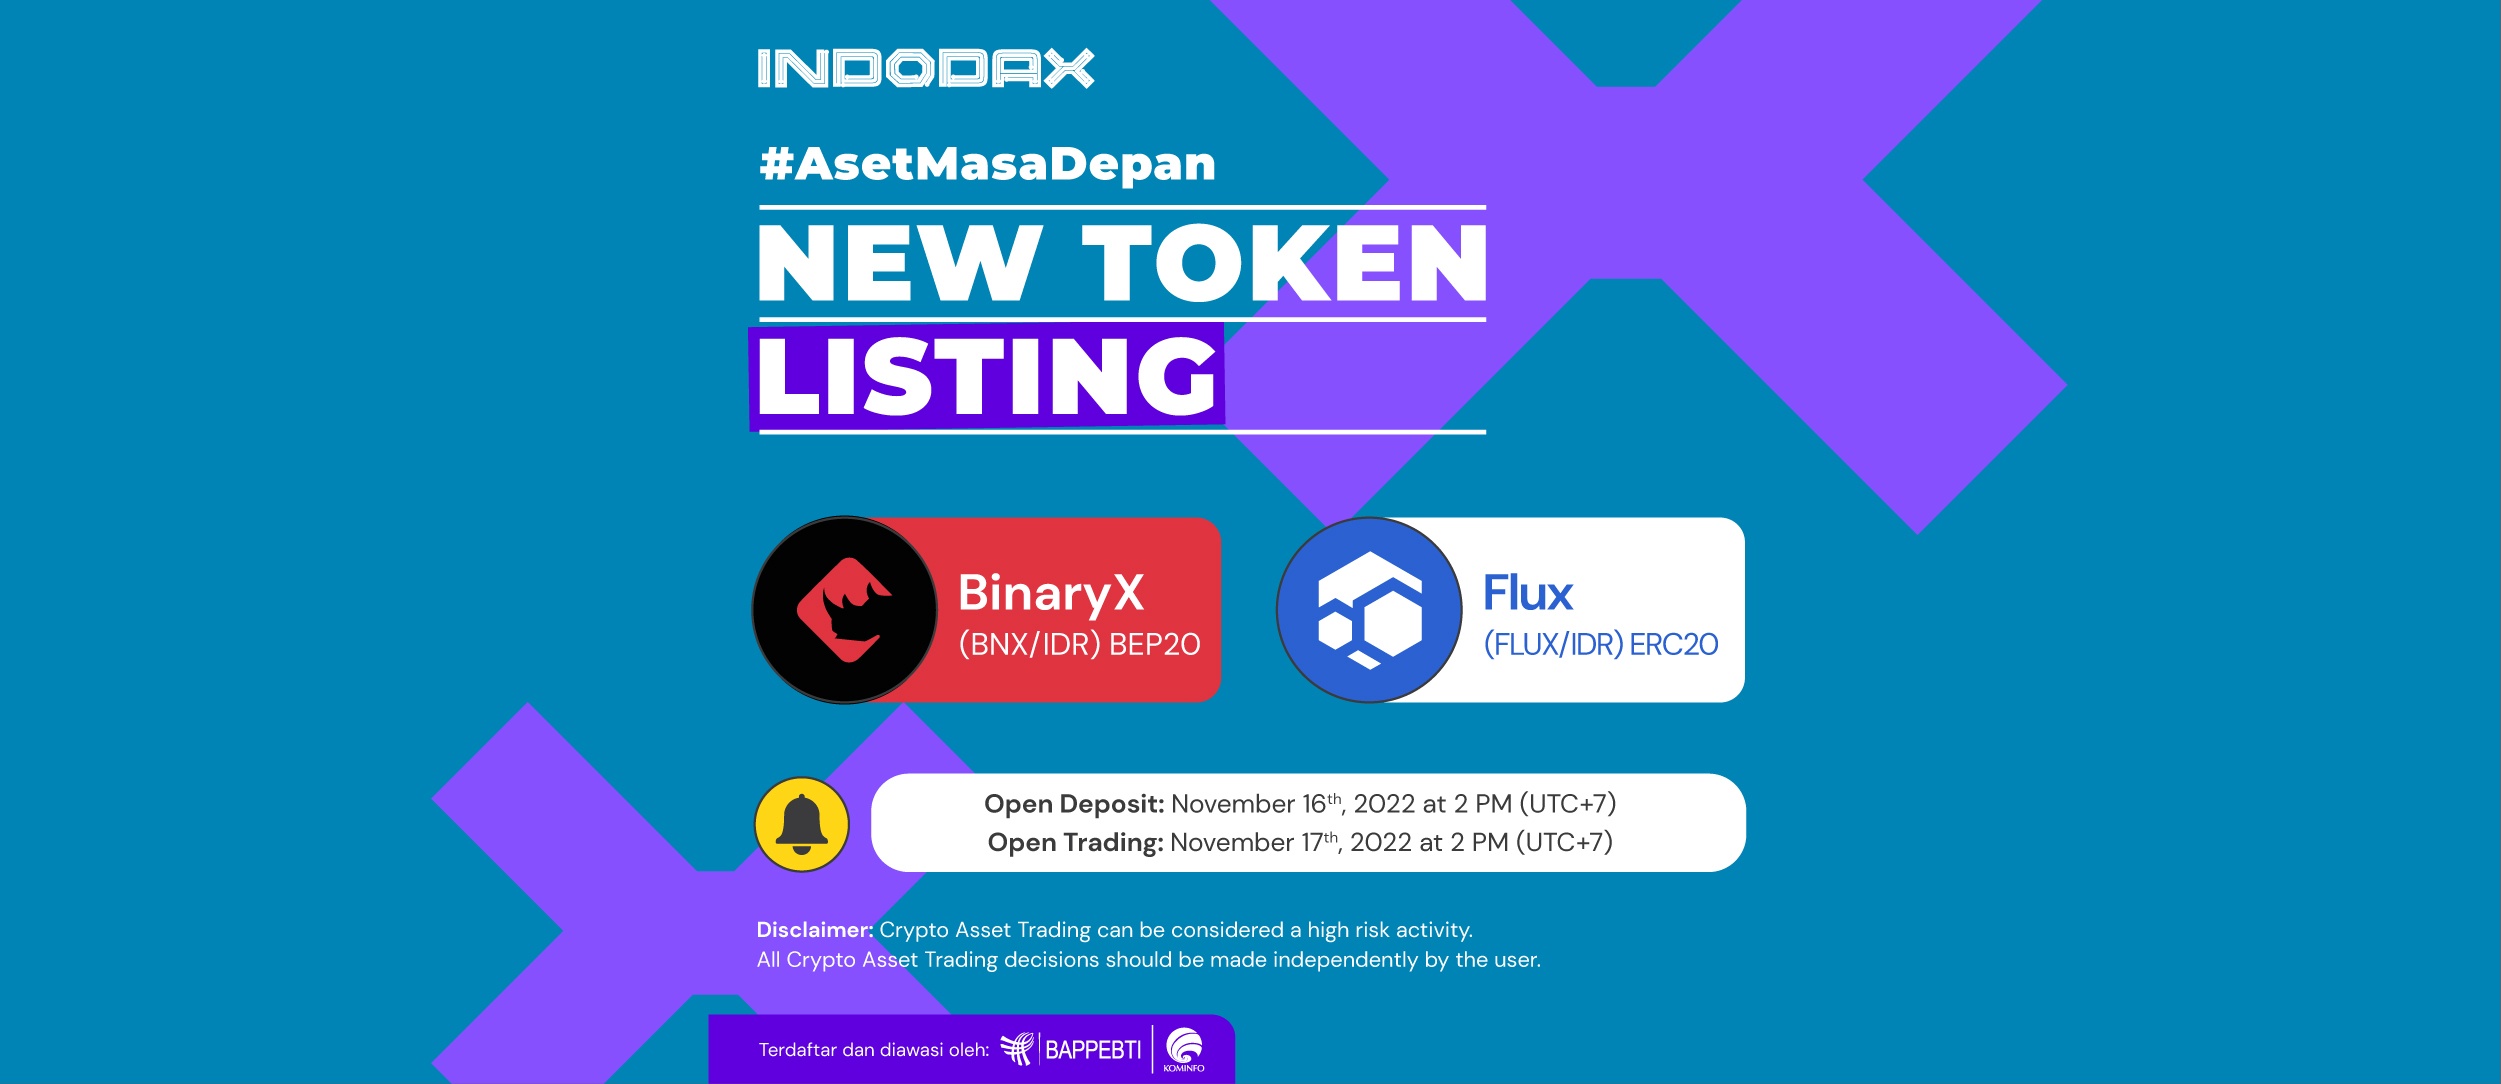 Binary X (BNX) & Flux (FLUX) Listing on INDODAX